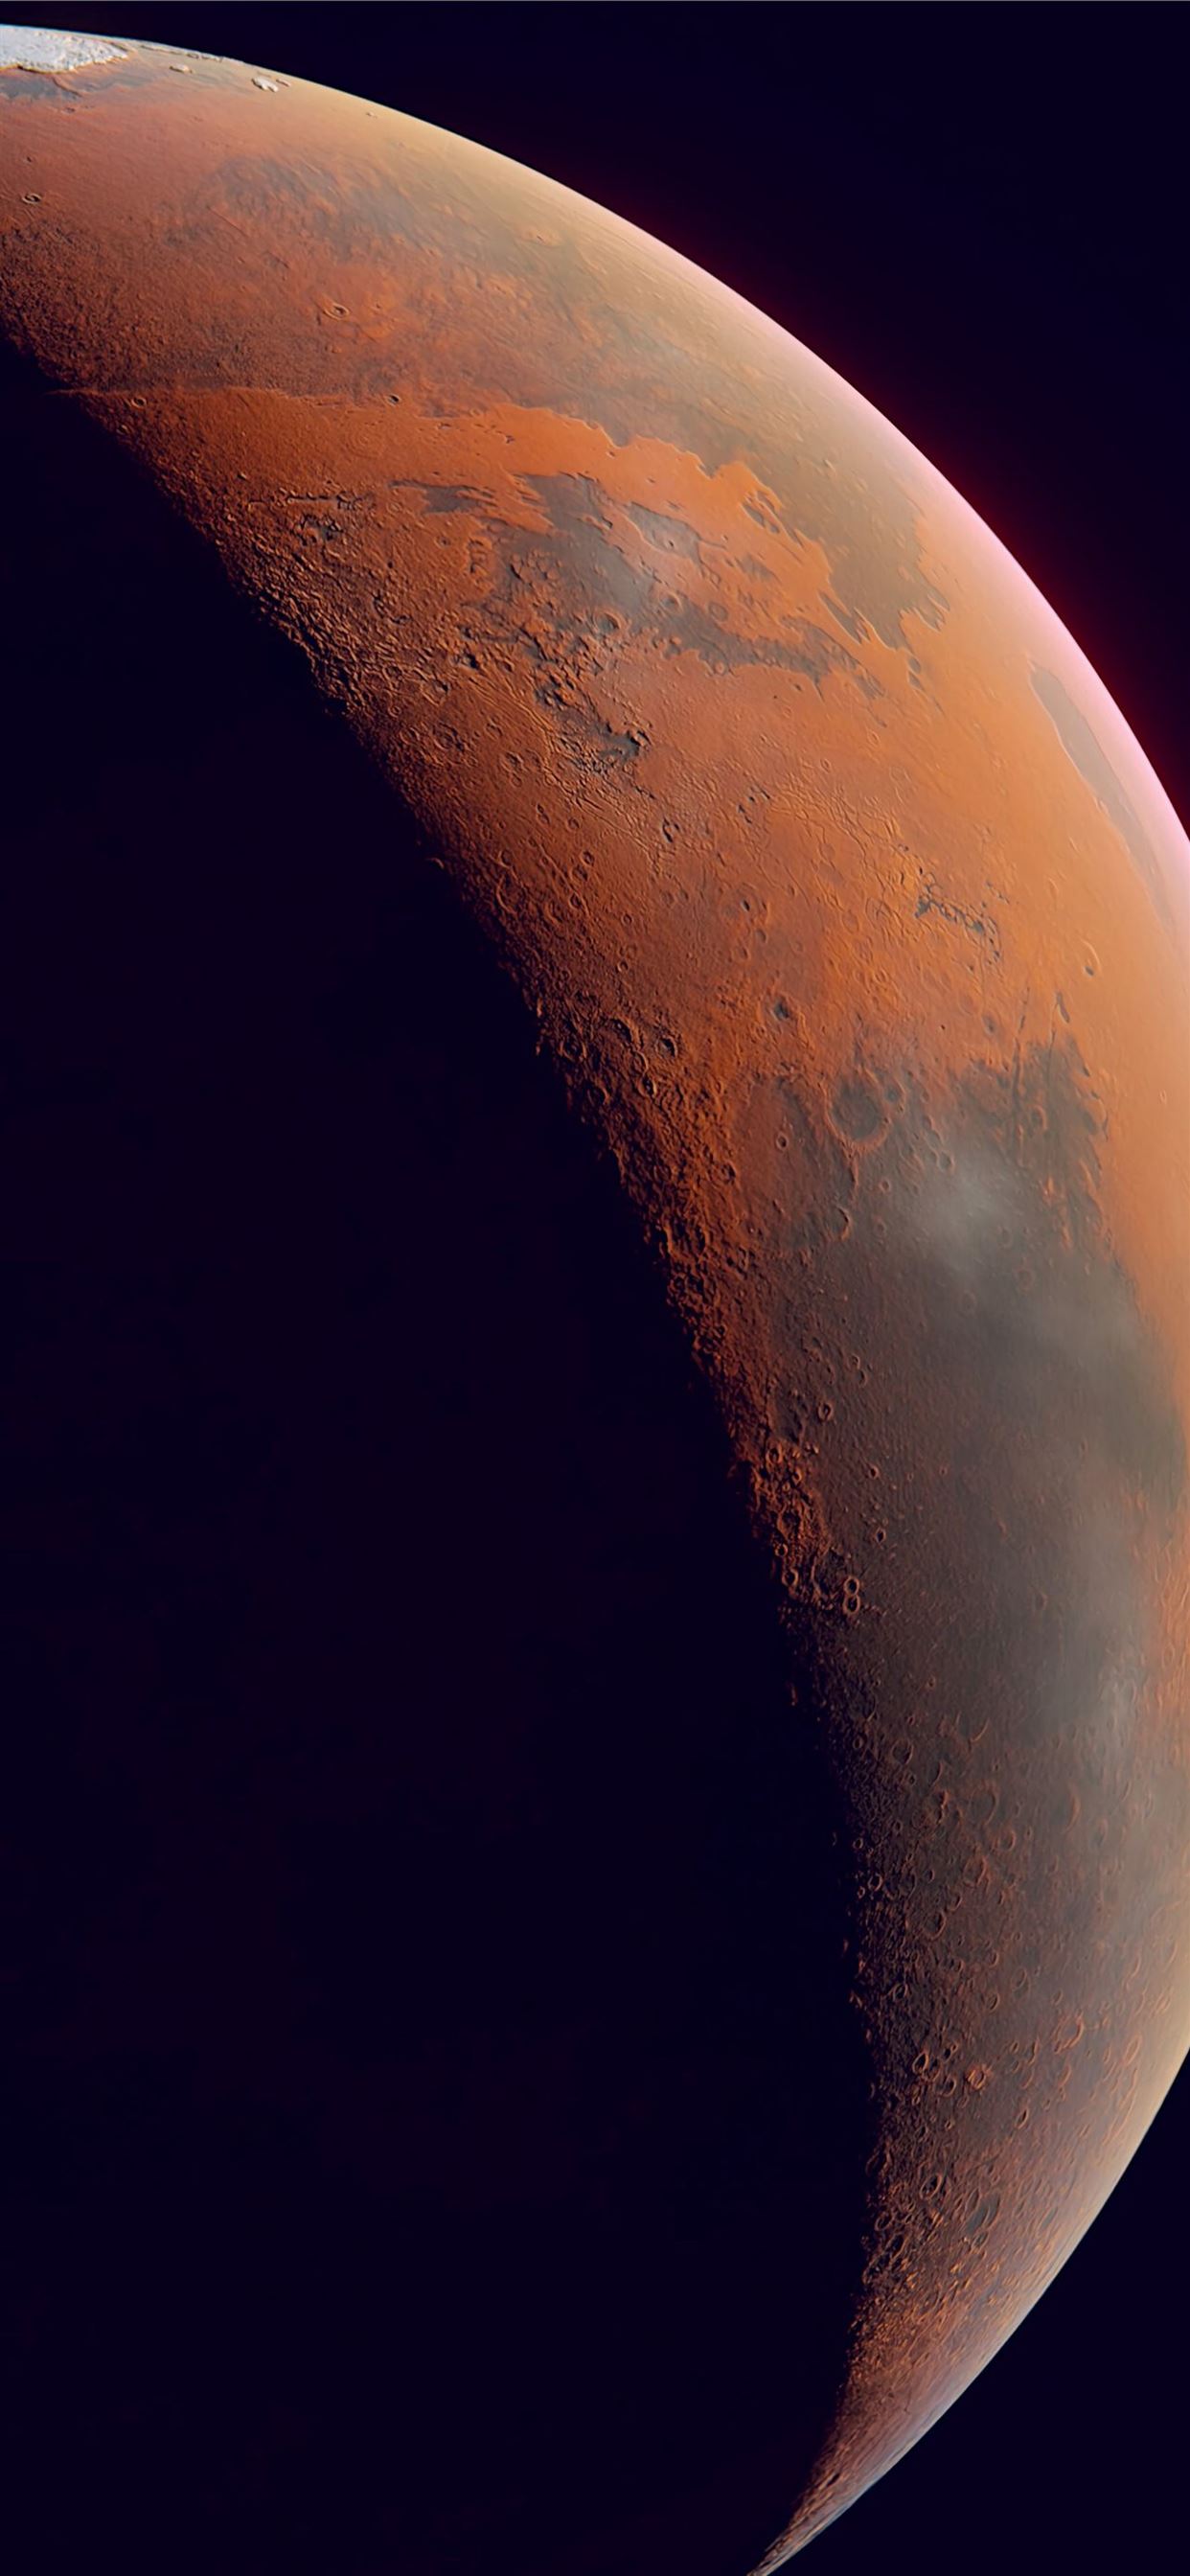 Hãy chiêm ngưỡng những cảnh tuyệt đẹp của hành tinh đỏ - Sao Hỏa với hình ảnh đầy mê hoặc. Từ những căn cứ NASA đến những địa hình trùng điệp với Trái đất, bạn sẽ khám phá được nhiều bí ẩn về hành tinh lạ này. 